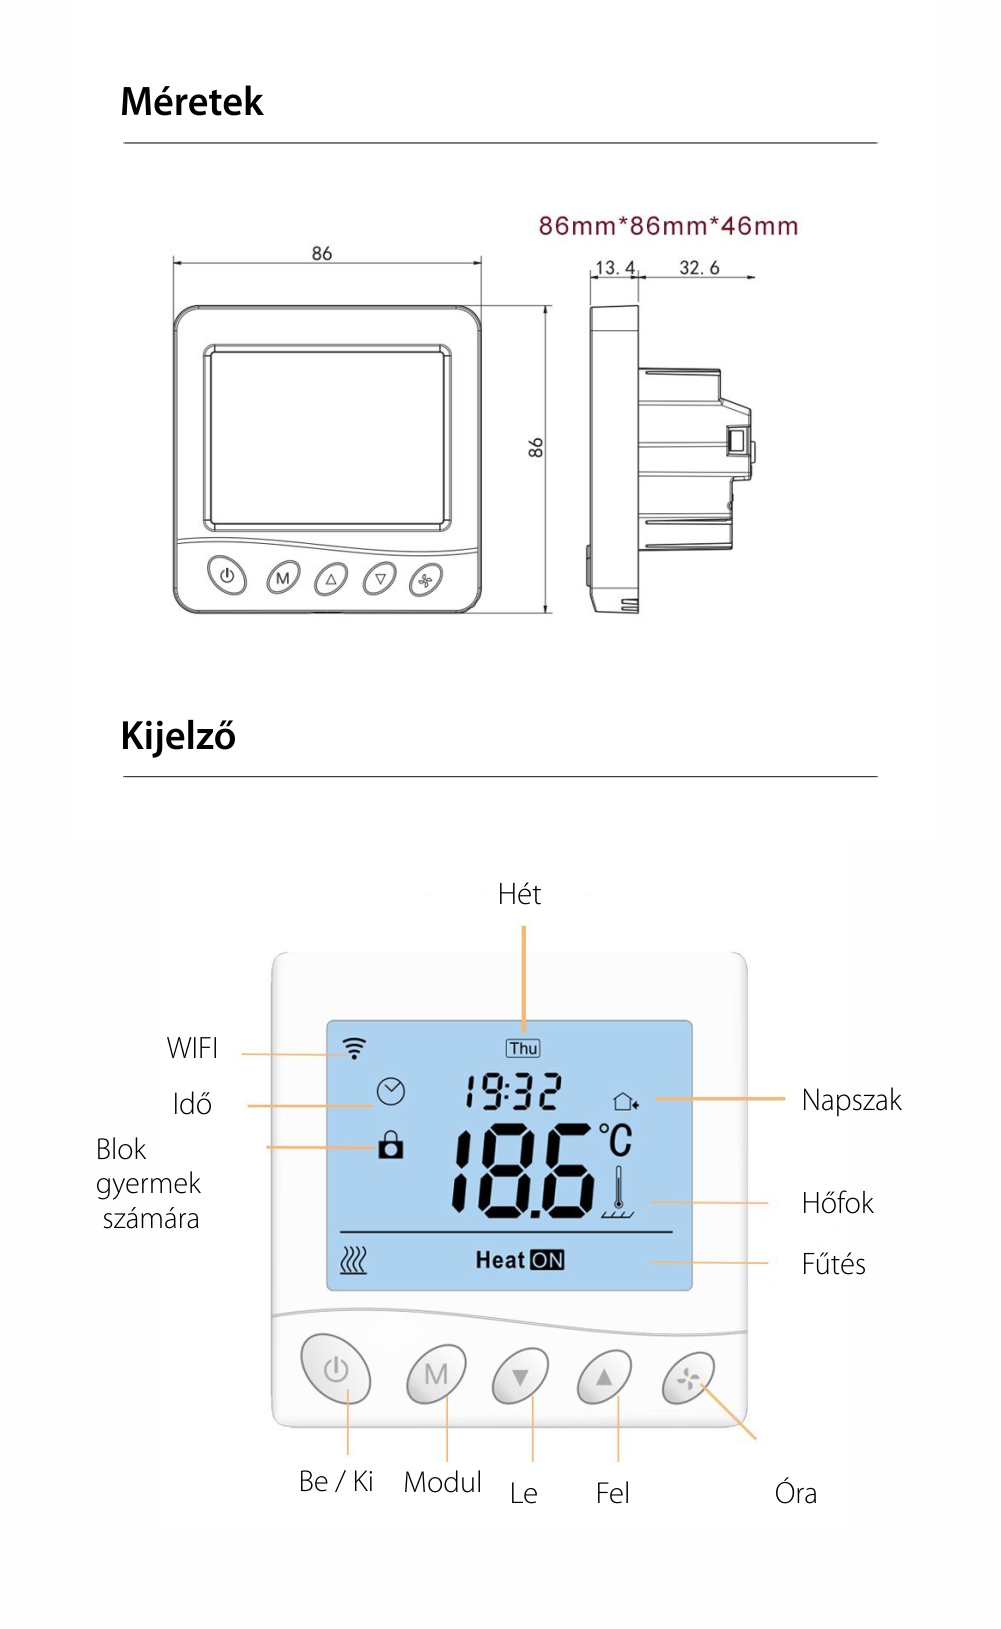 BeOk Wi-Fi Okos Termosztát TR33-WIFI-EP, Elektromos padlófűtéshez, LCD Kijelző, Alkalmazás vezérlés